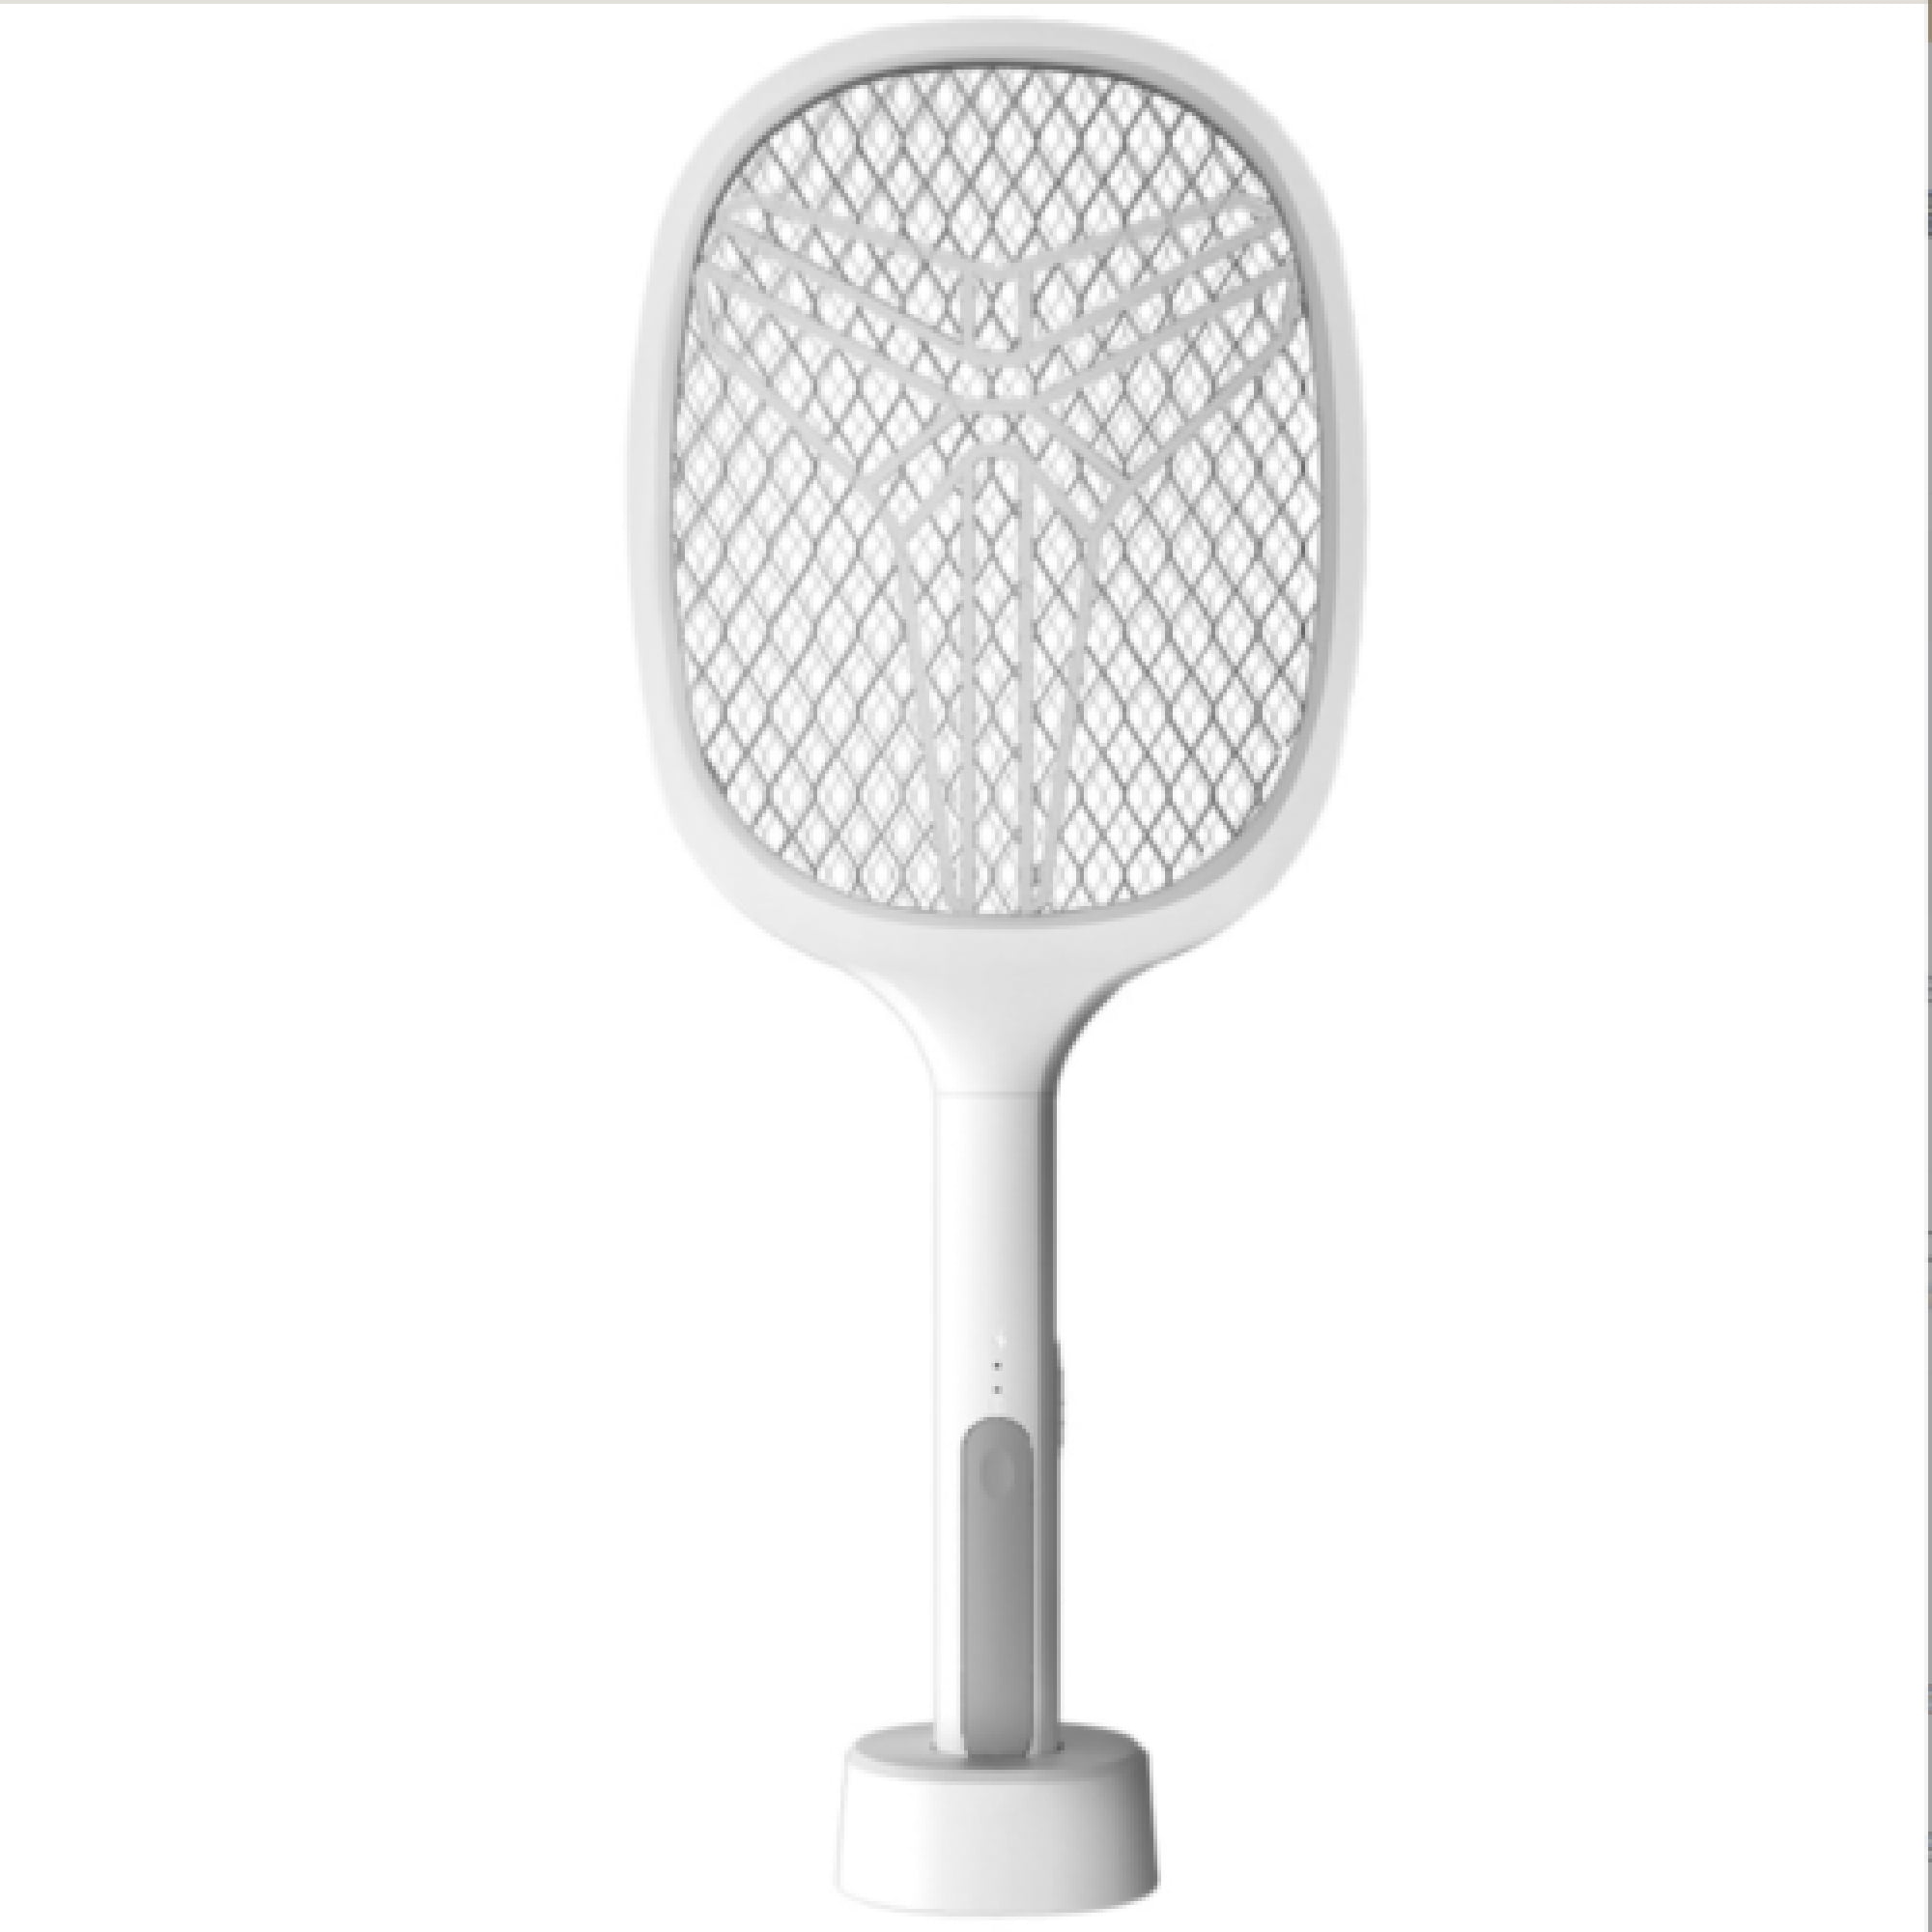 Achetez Sothing Mini Electric Mosquito Swatter USB Racket de Tueur